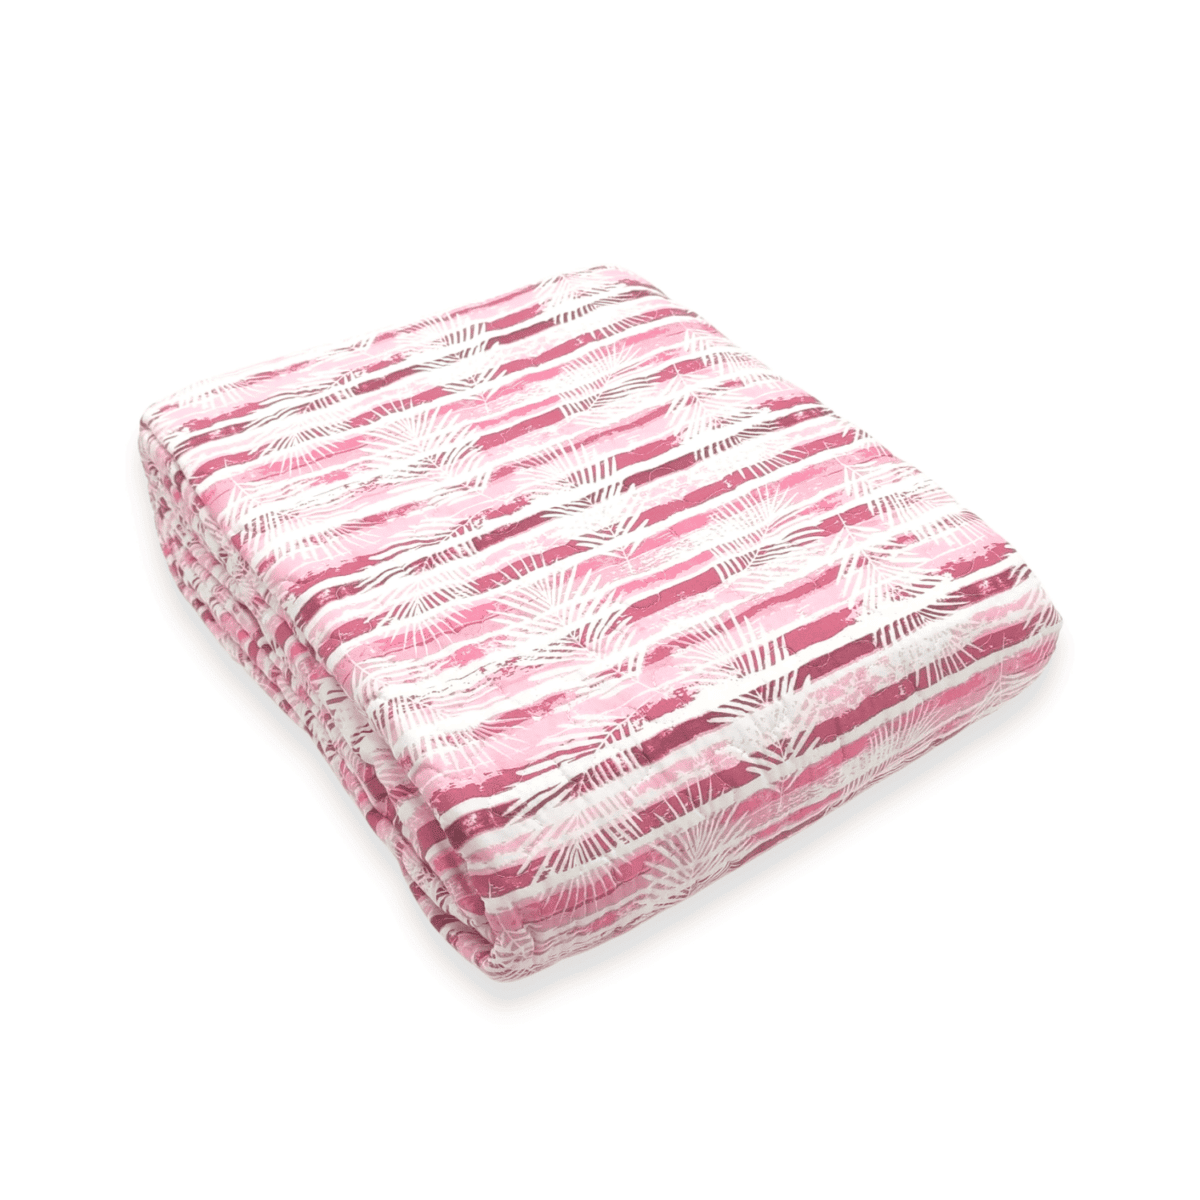 oasi-rosa-copriletto-trapuntato-boutis-felci-rigato-rosa-microfibra-primaverile-estivo-fold